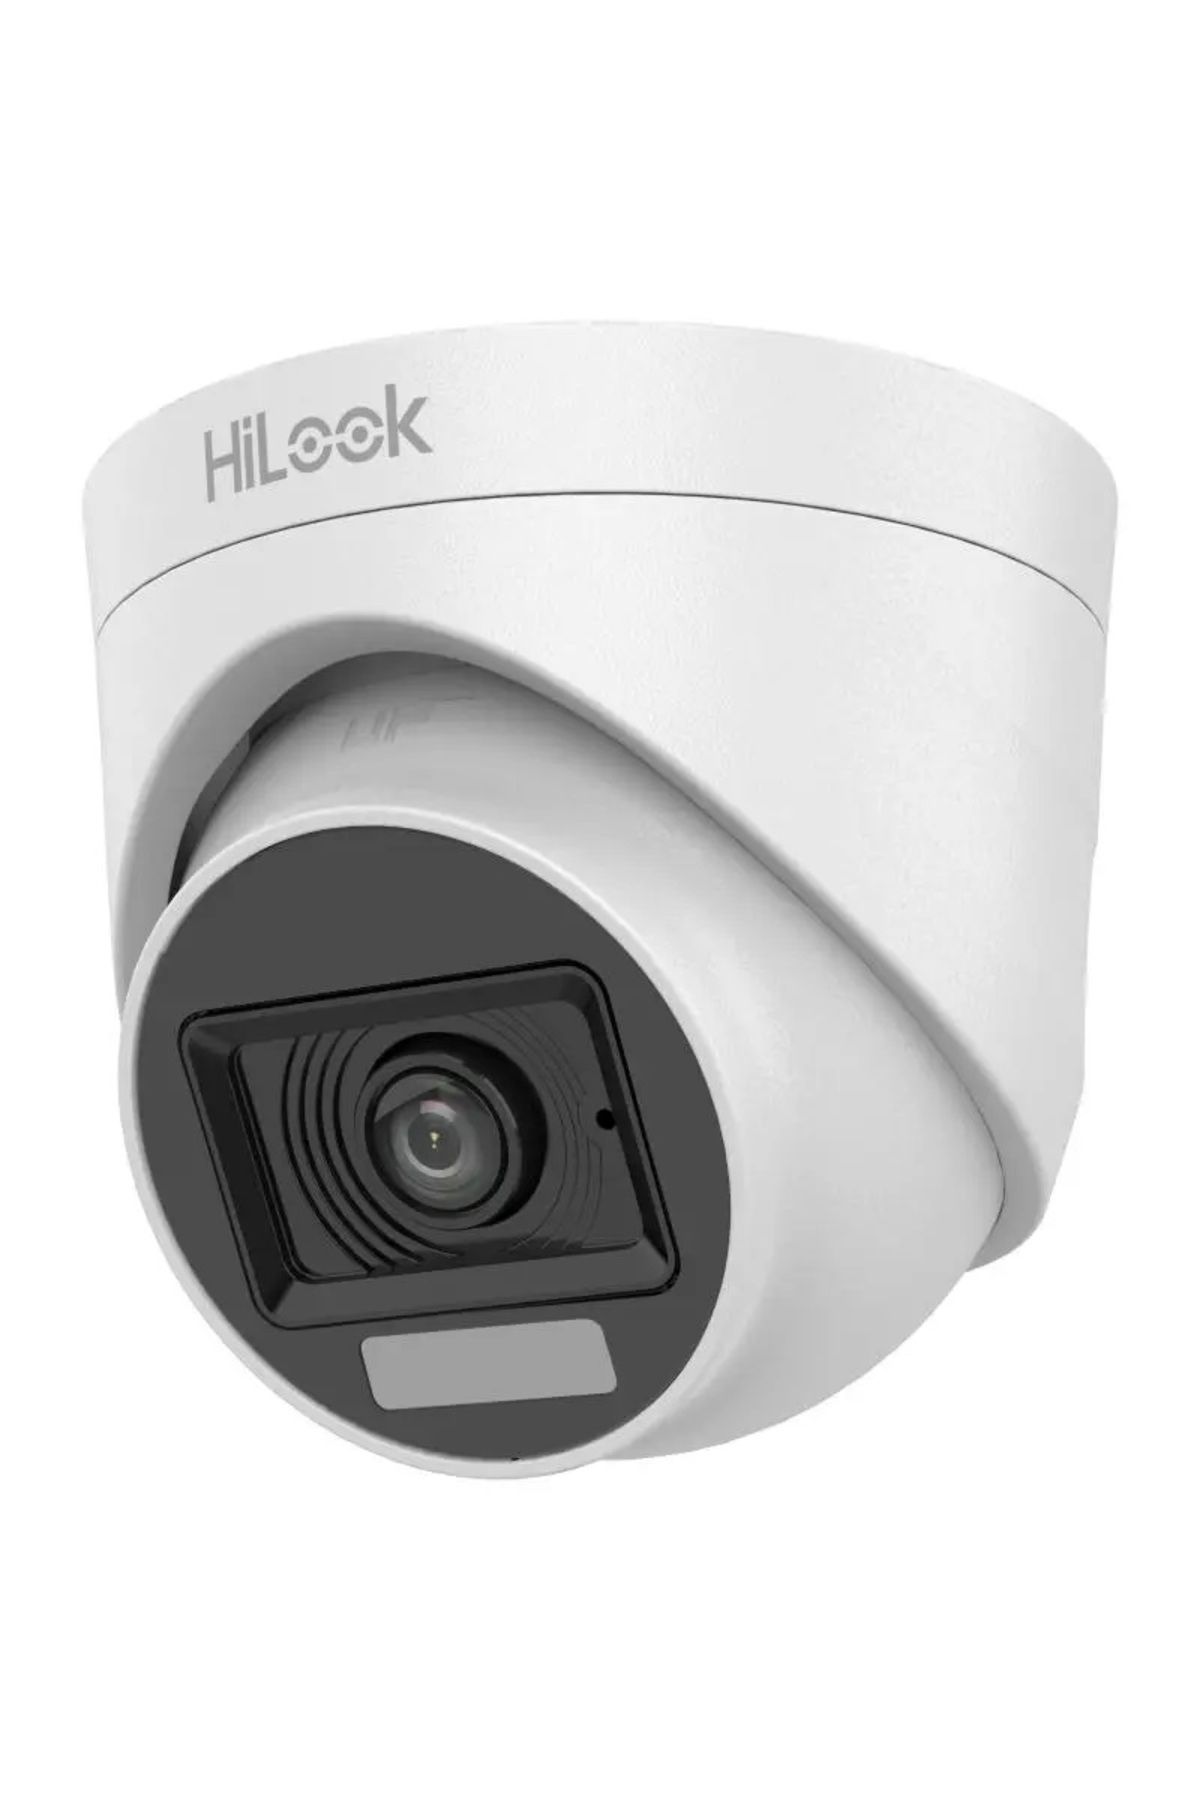 Hilook THC-T127-LPS 2Mp Dual Light 2.8mm Mini Turret Mikrofonlu Turbo HD Kamera